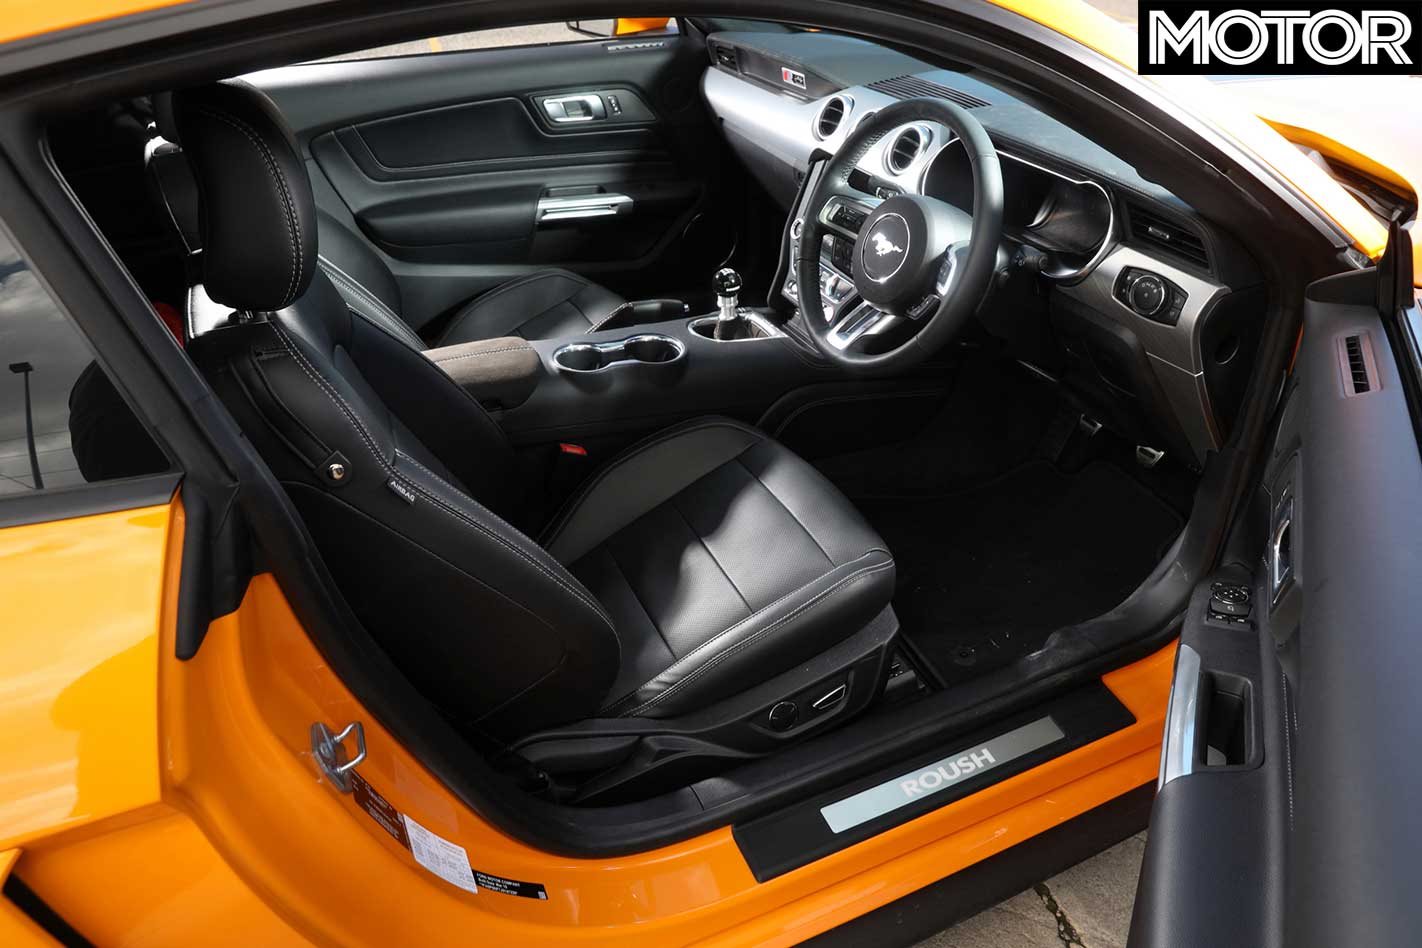 2018 Roush JackHammer Mustang interior